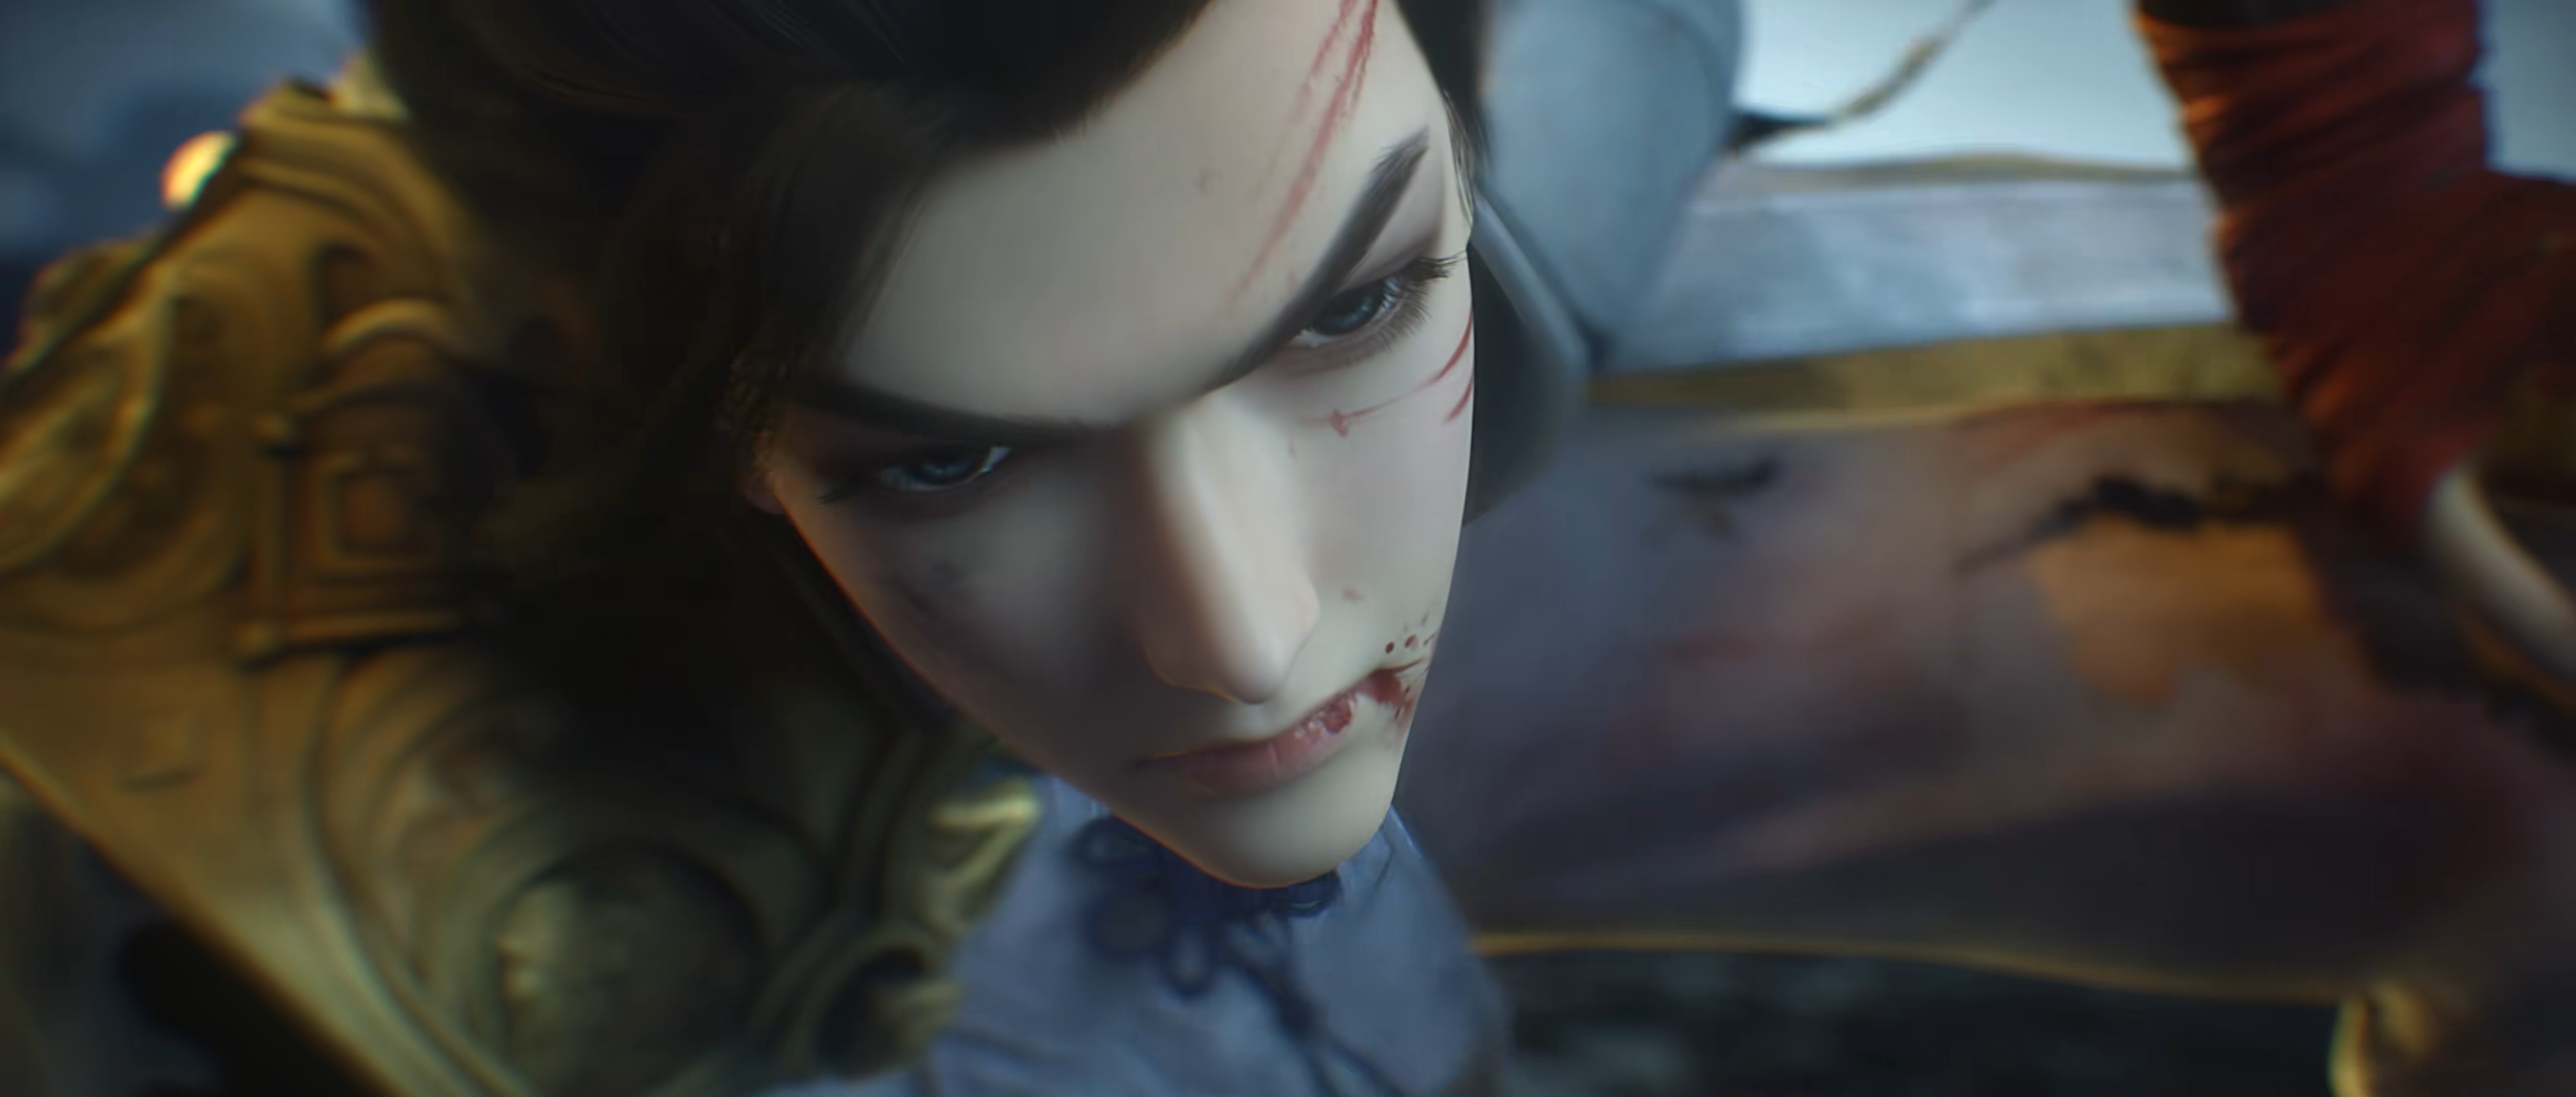 Daike Wan Mei Shi Jie Chinese Anime CGi Face Looking At Viewer Closeup 3840x1636